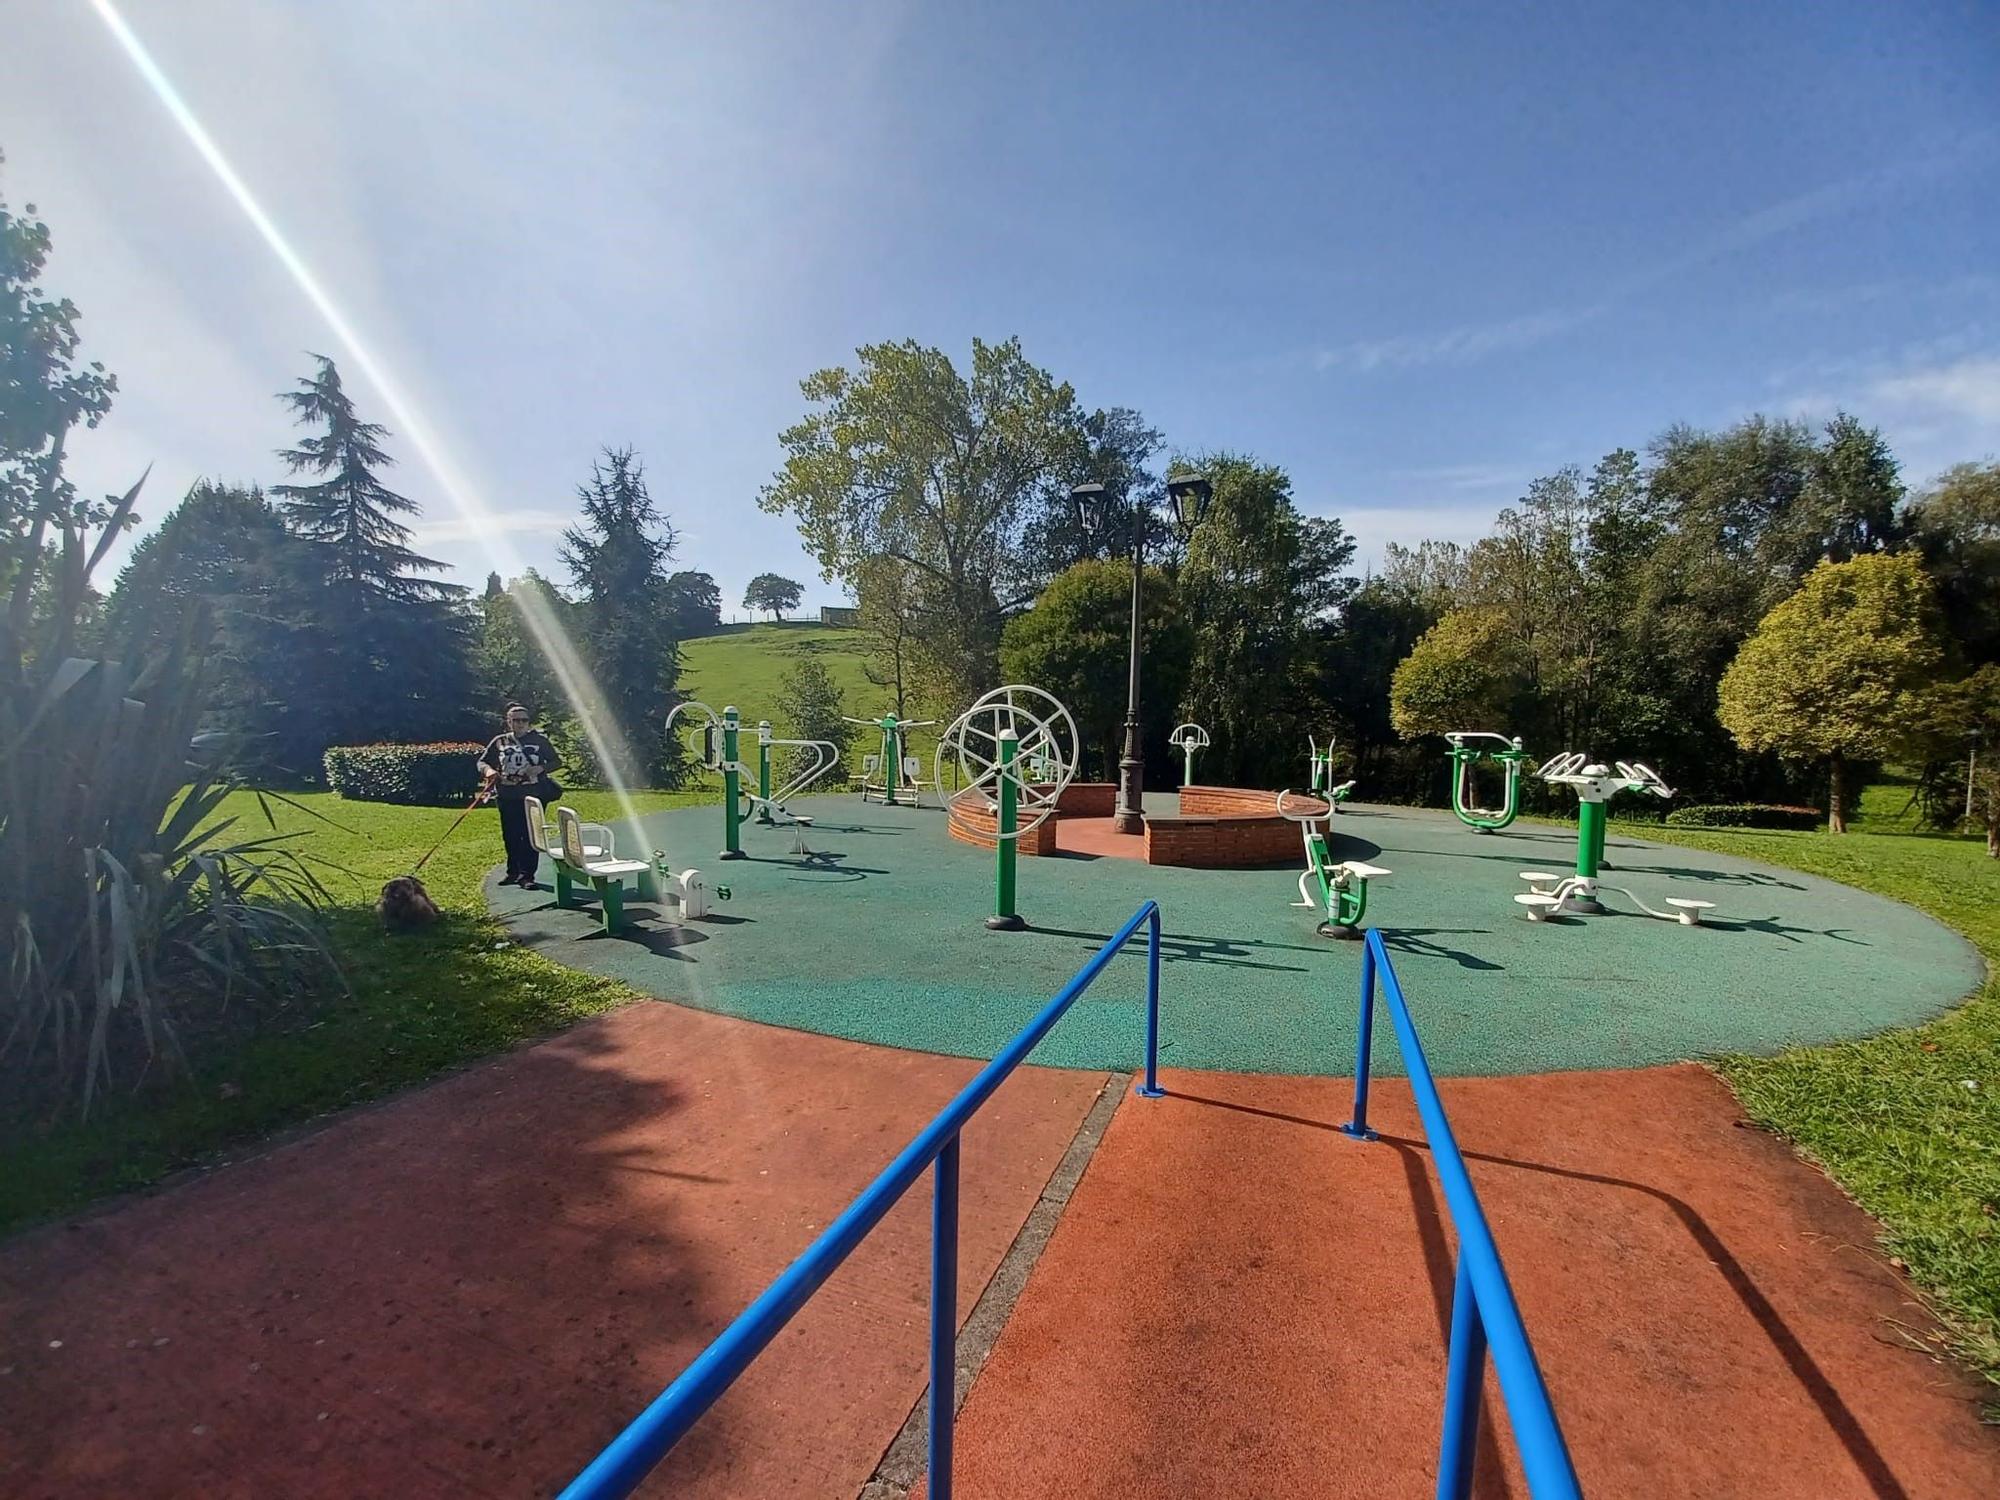 El Parque del Cardenal: así es el gran espacio de Llanera que tiene casi de todo y se dedica a un ilustre religioso de Ferroñes